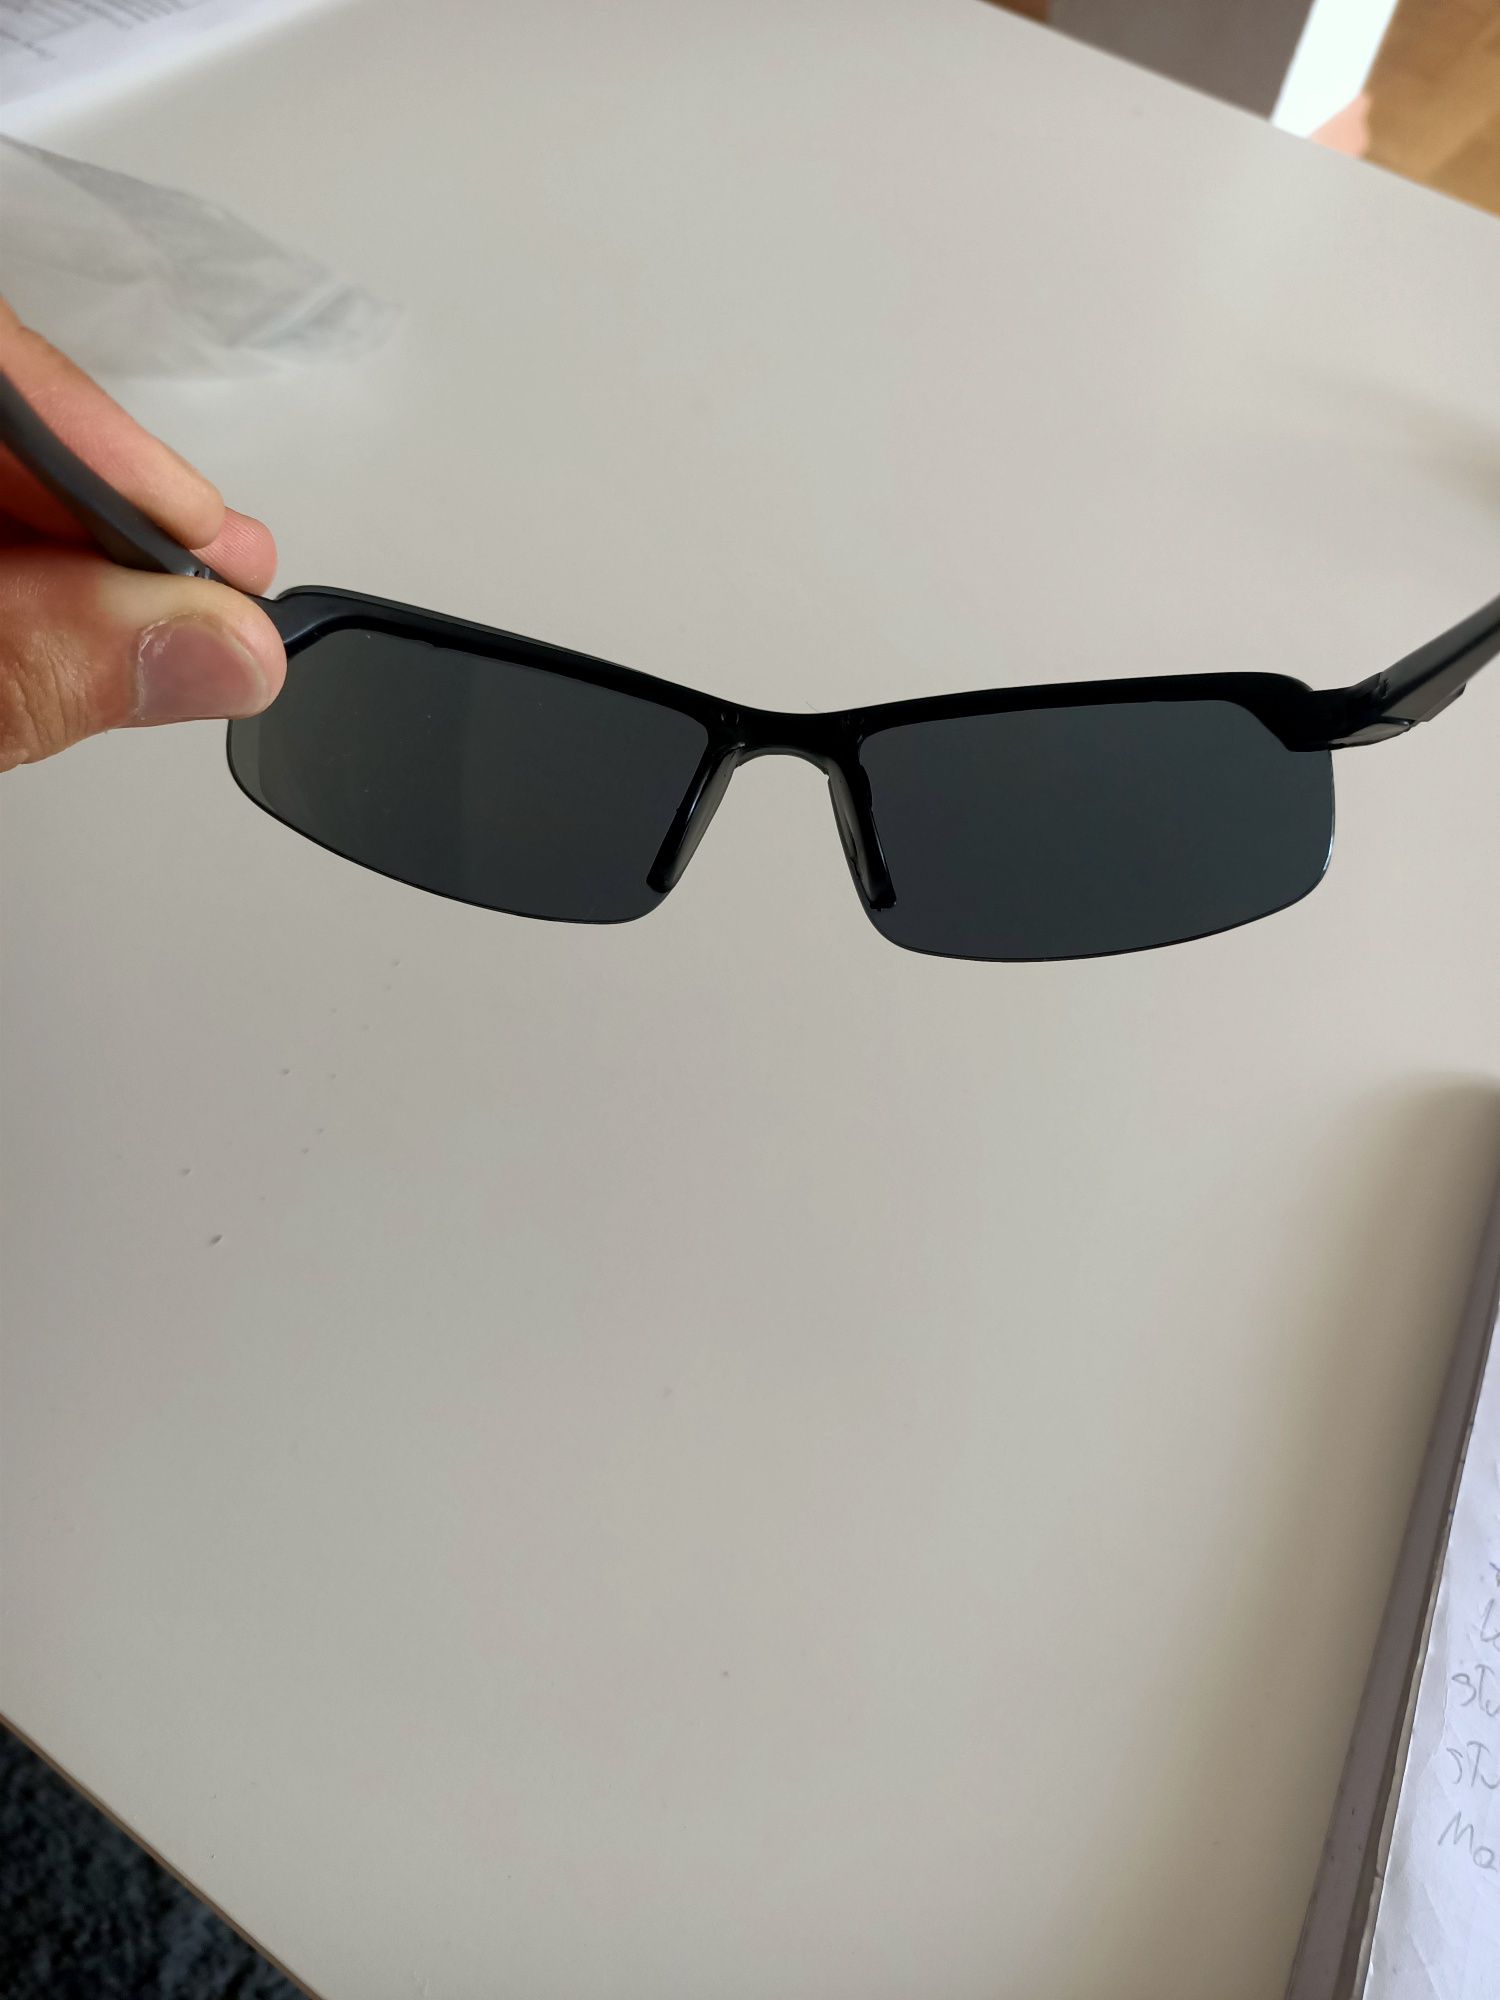 Okulary przeciwsłoneczne, fotochromowe